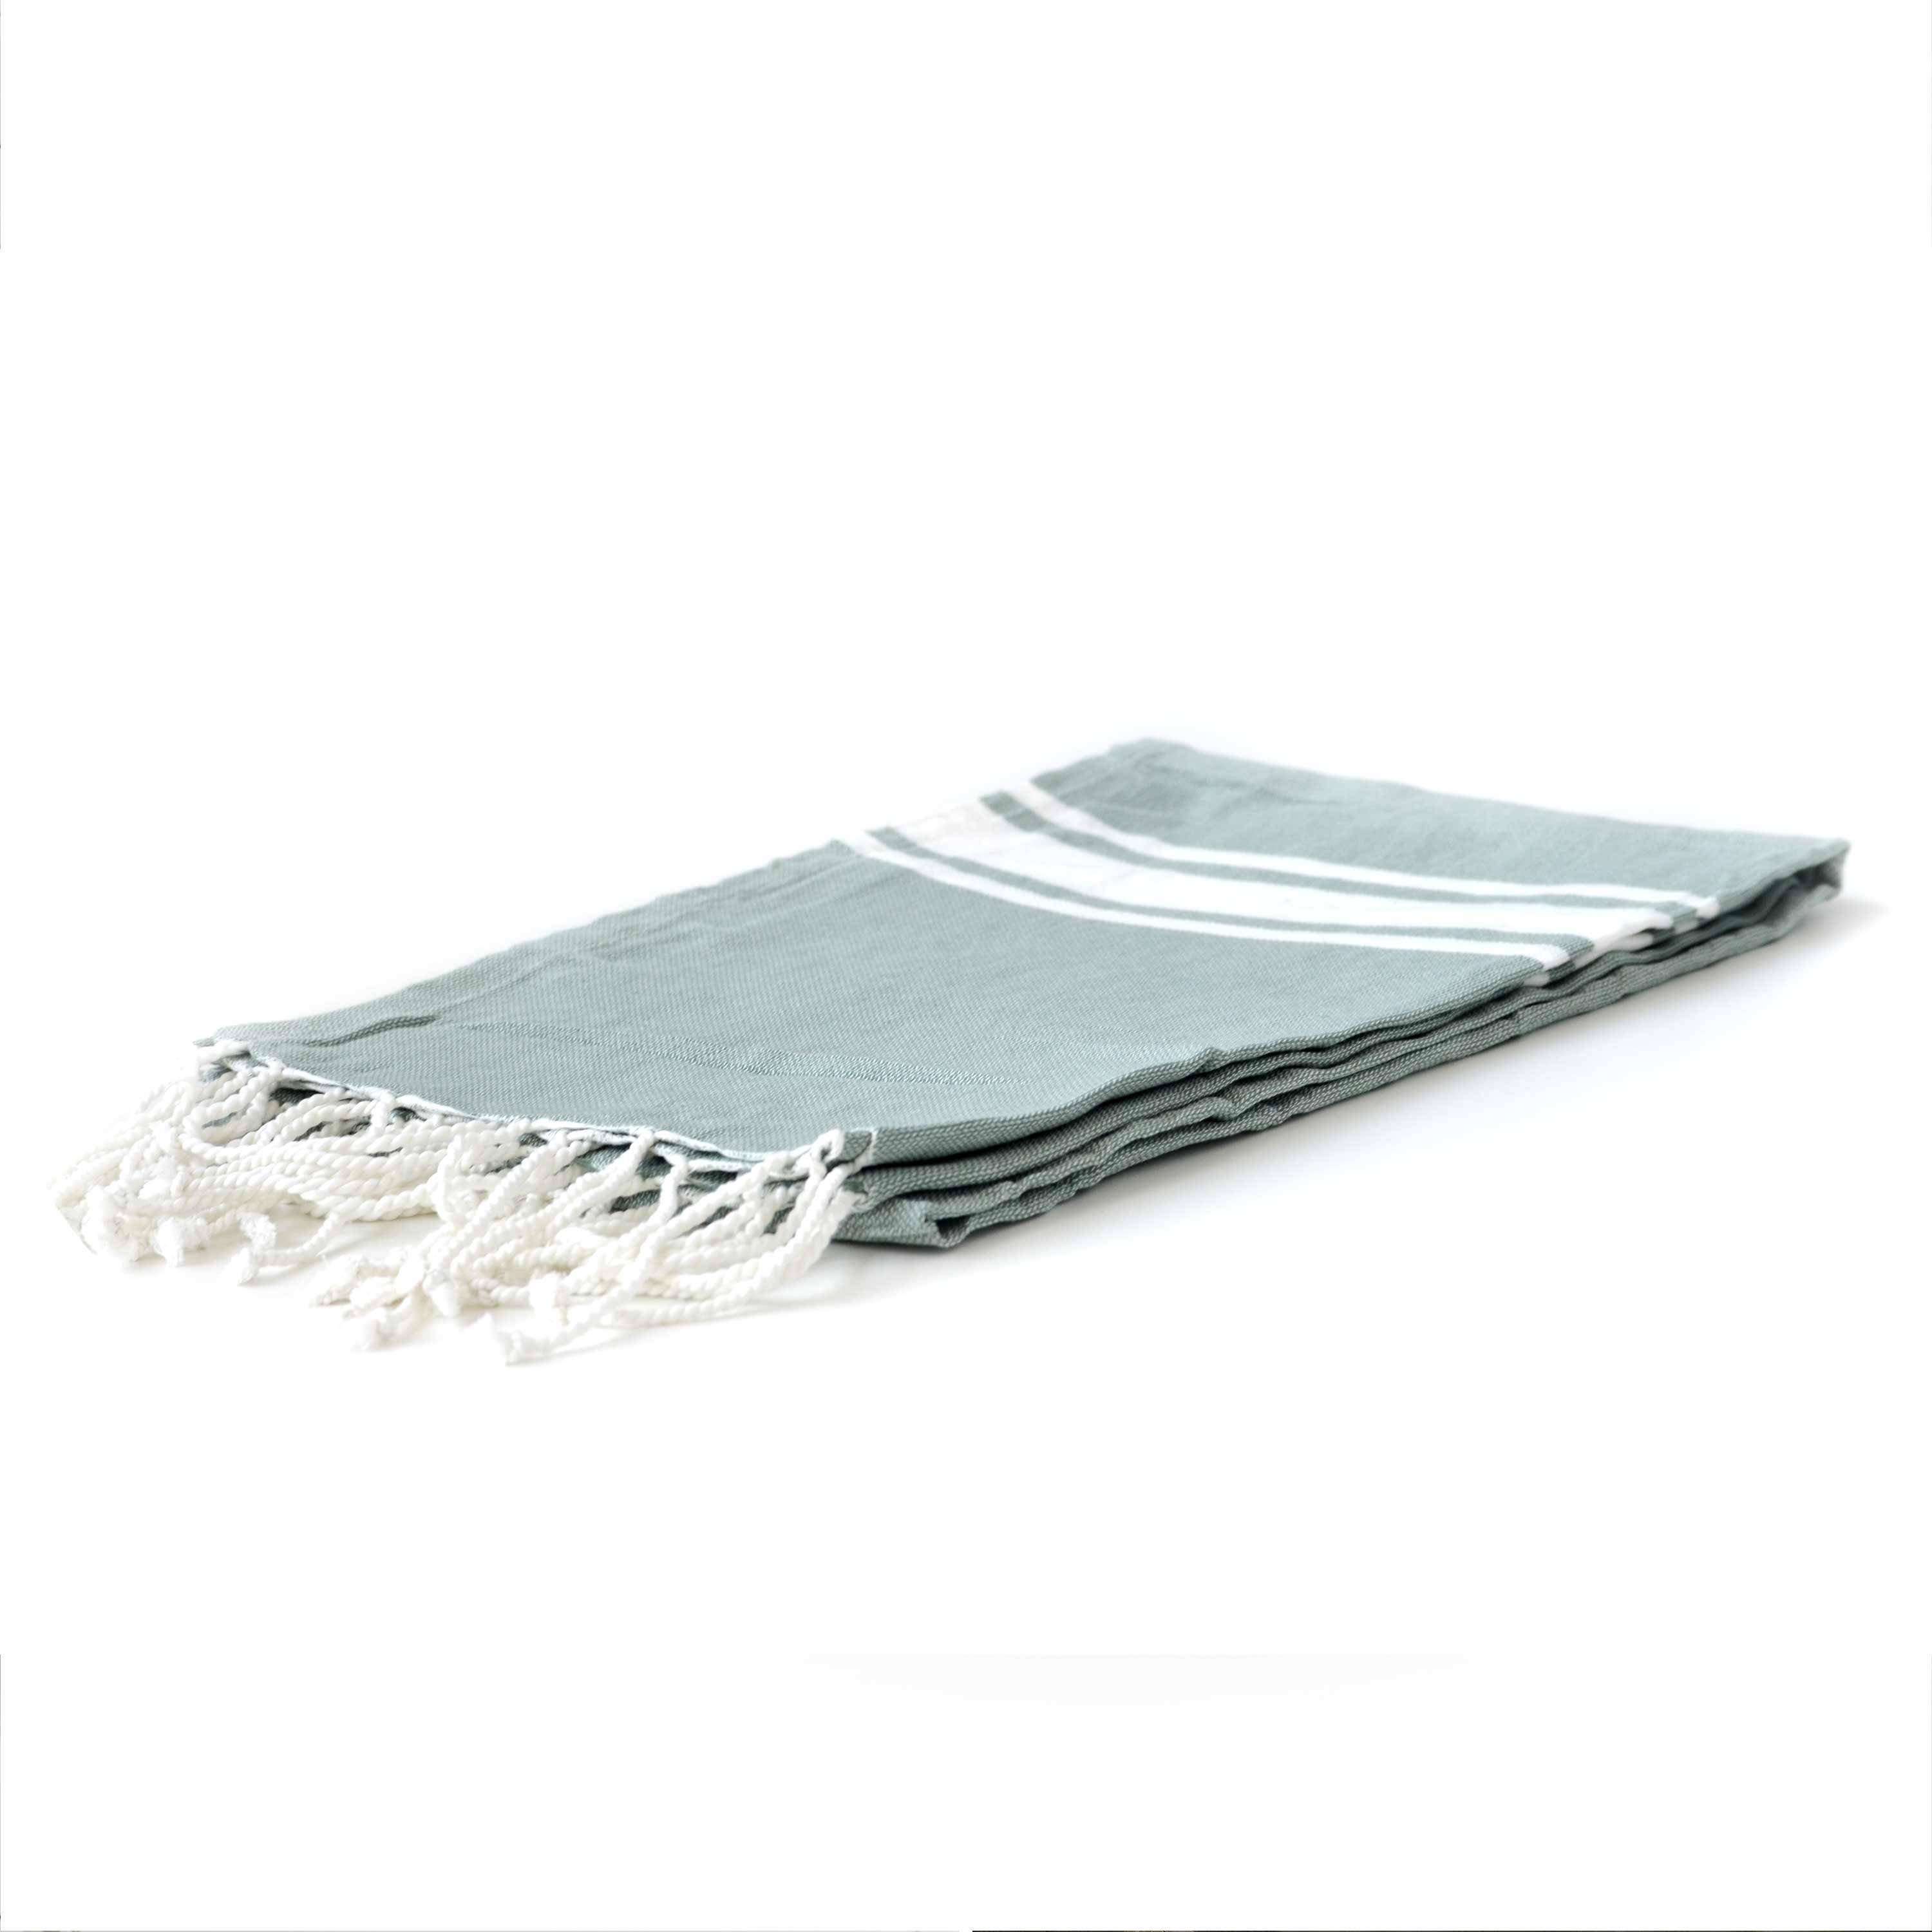 Fouta – 190x100cm – Groengrijs, Tunesische handdoek, 100% katoen, rechthoekig Photo2